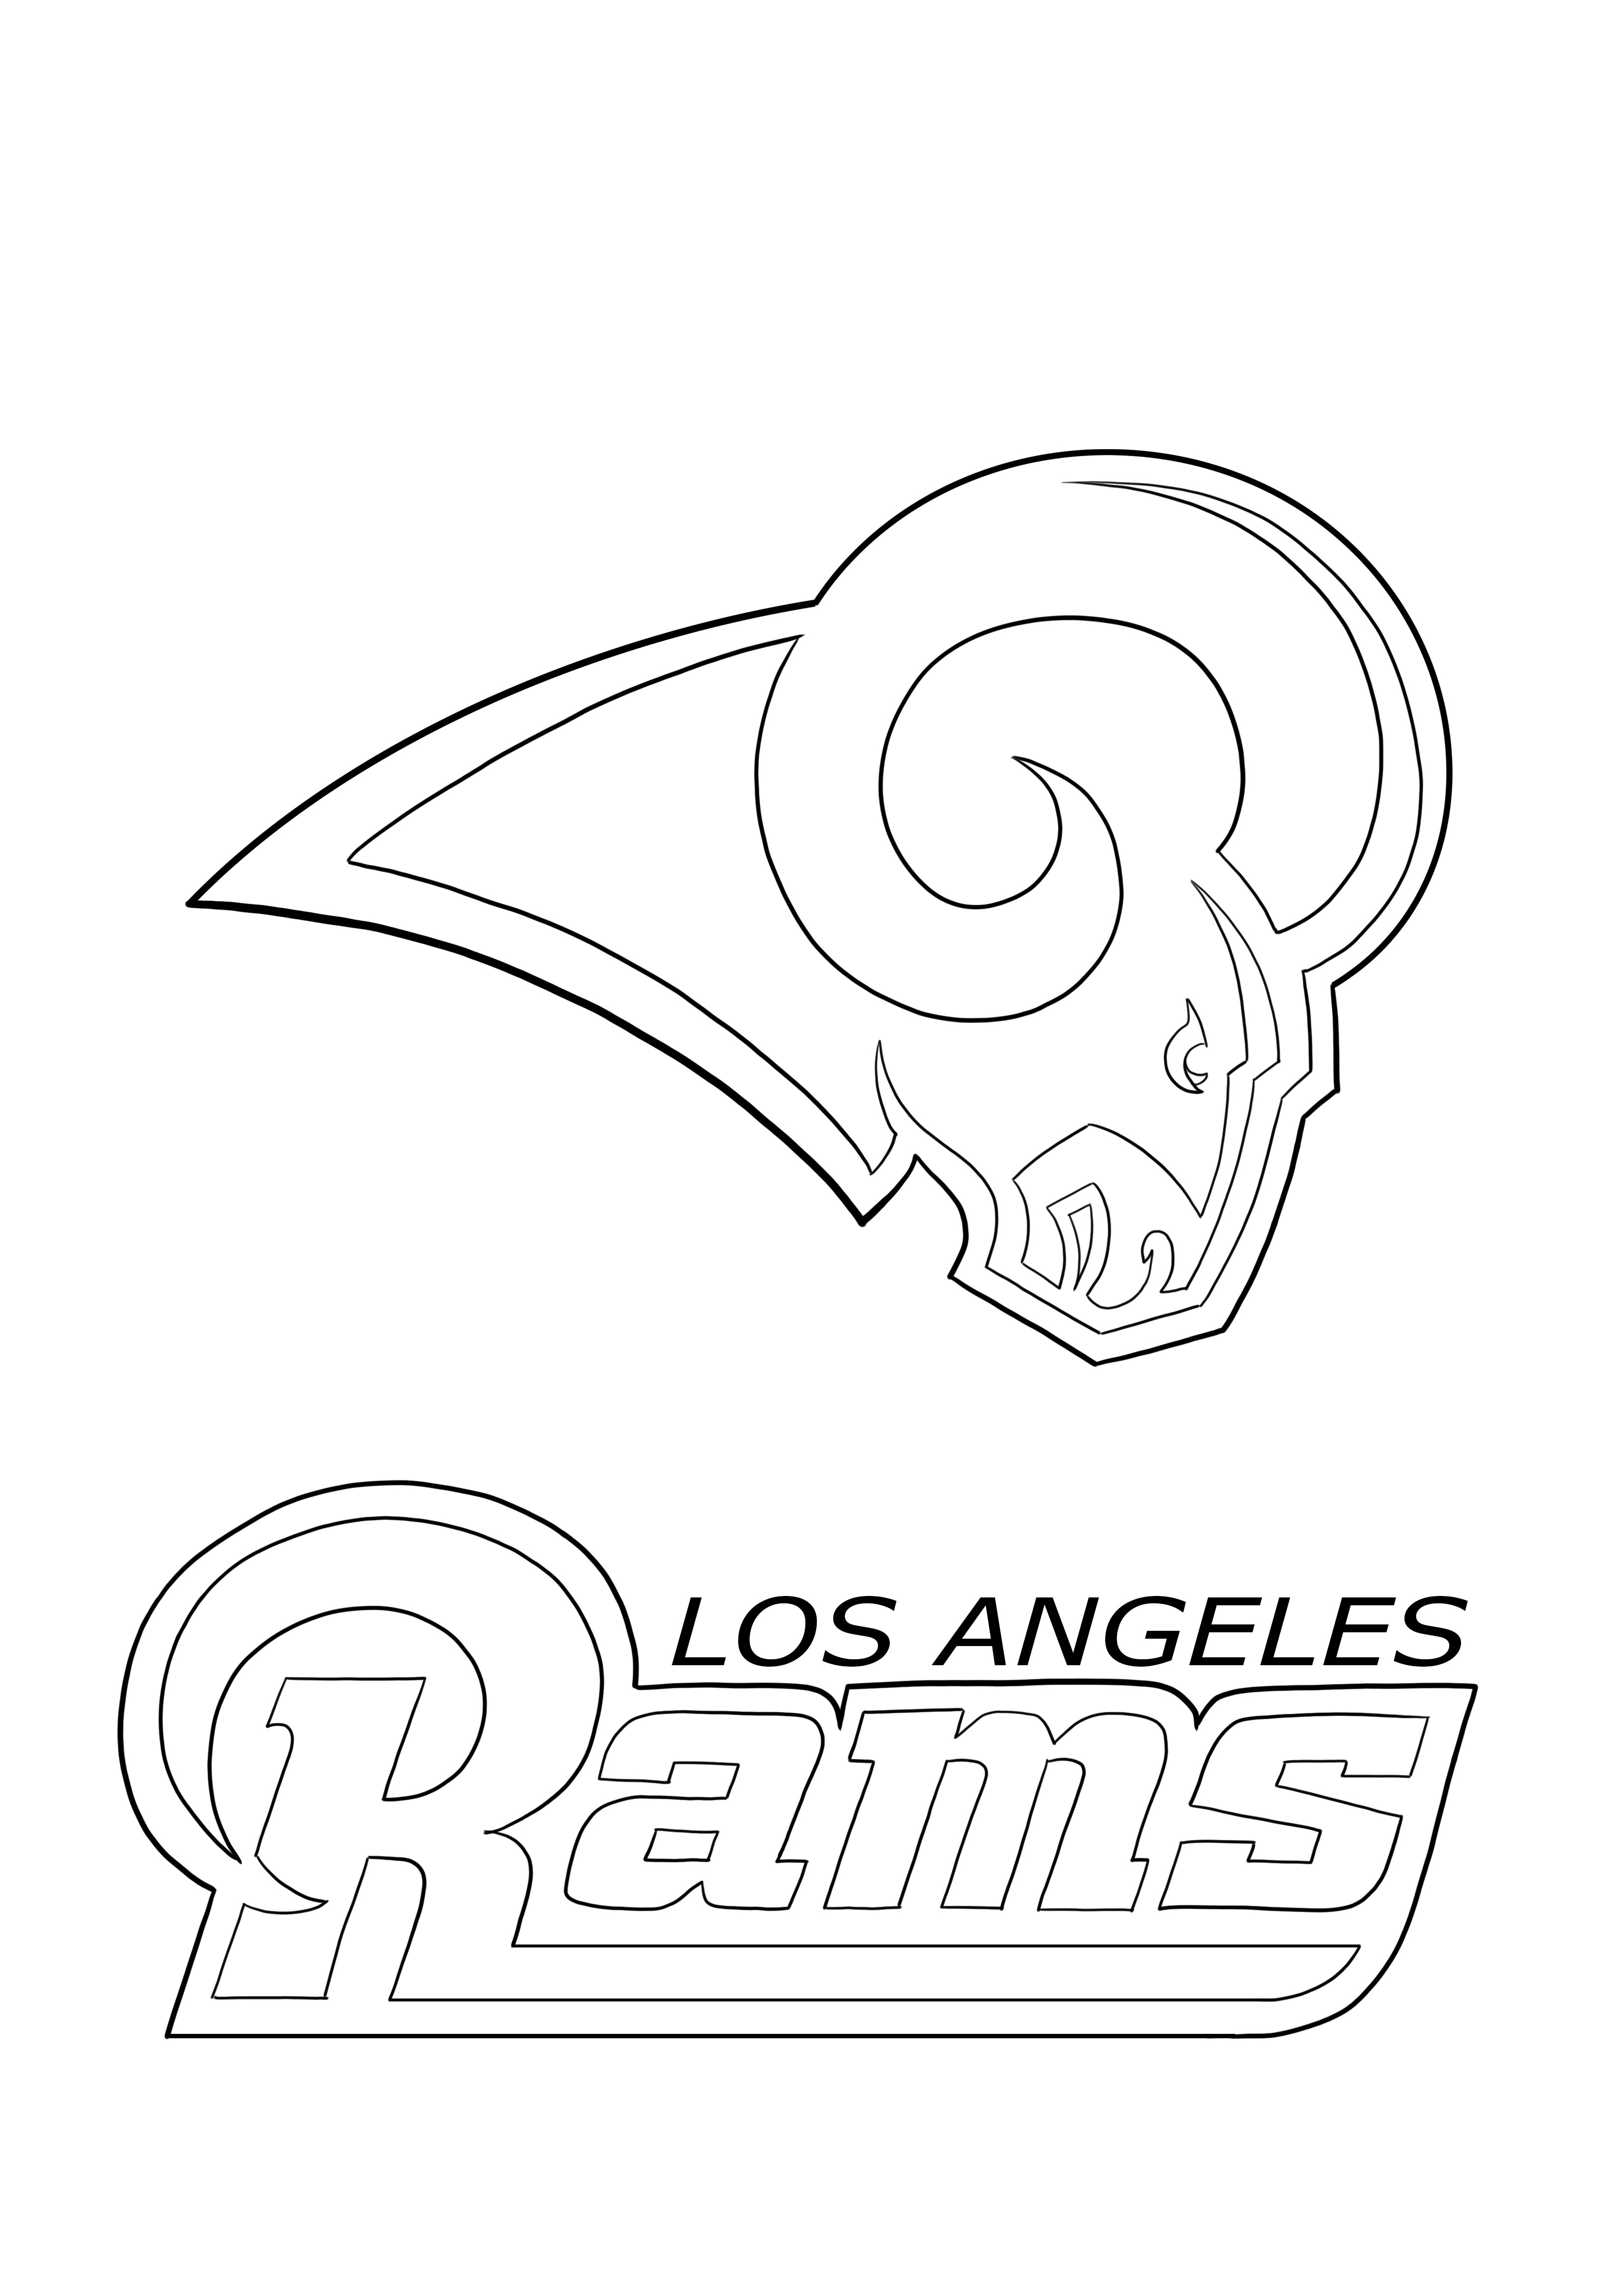 Los Angeles Rams para colorear y descargar gratis